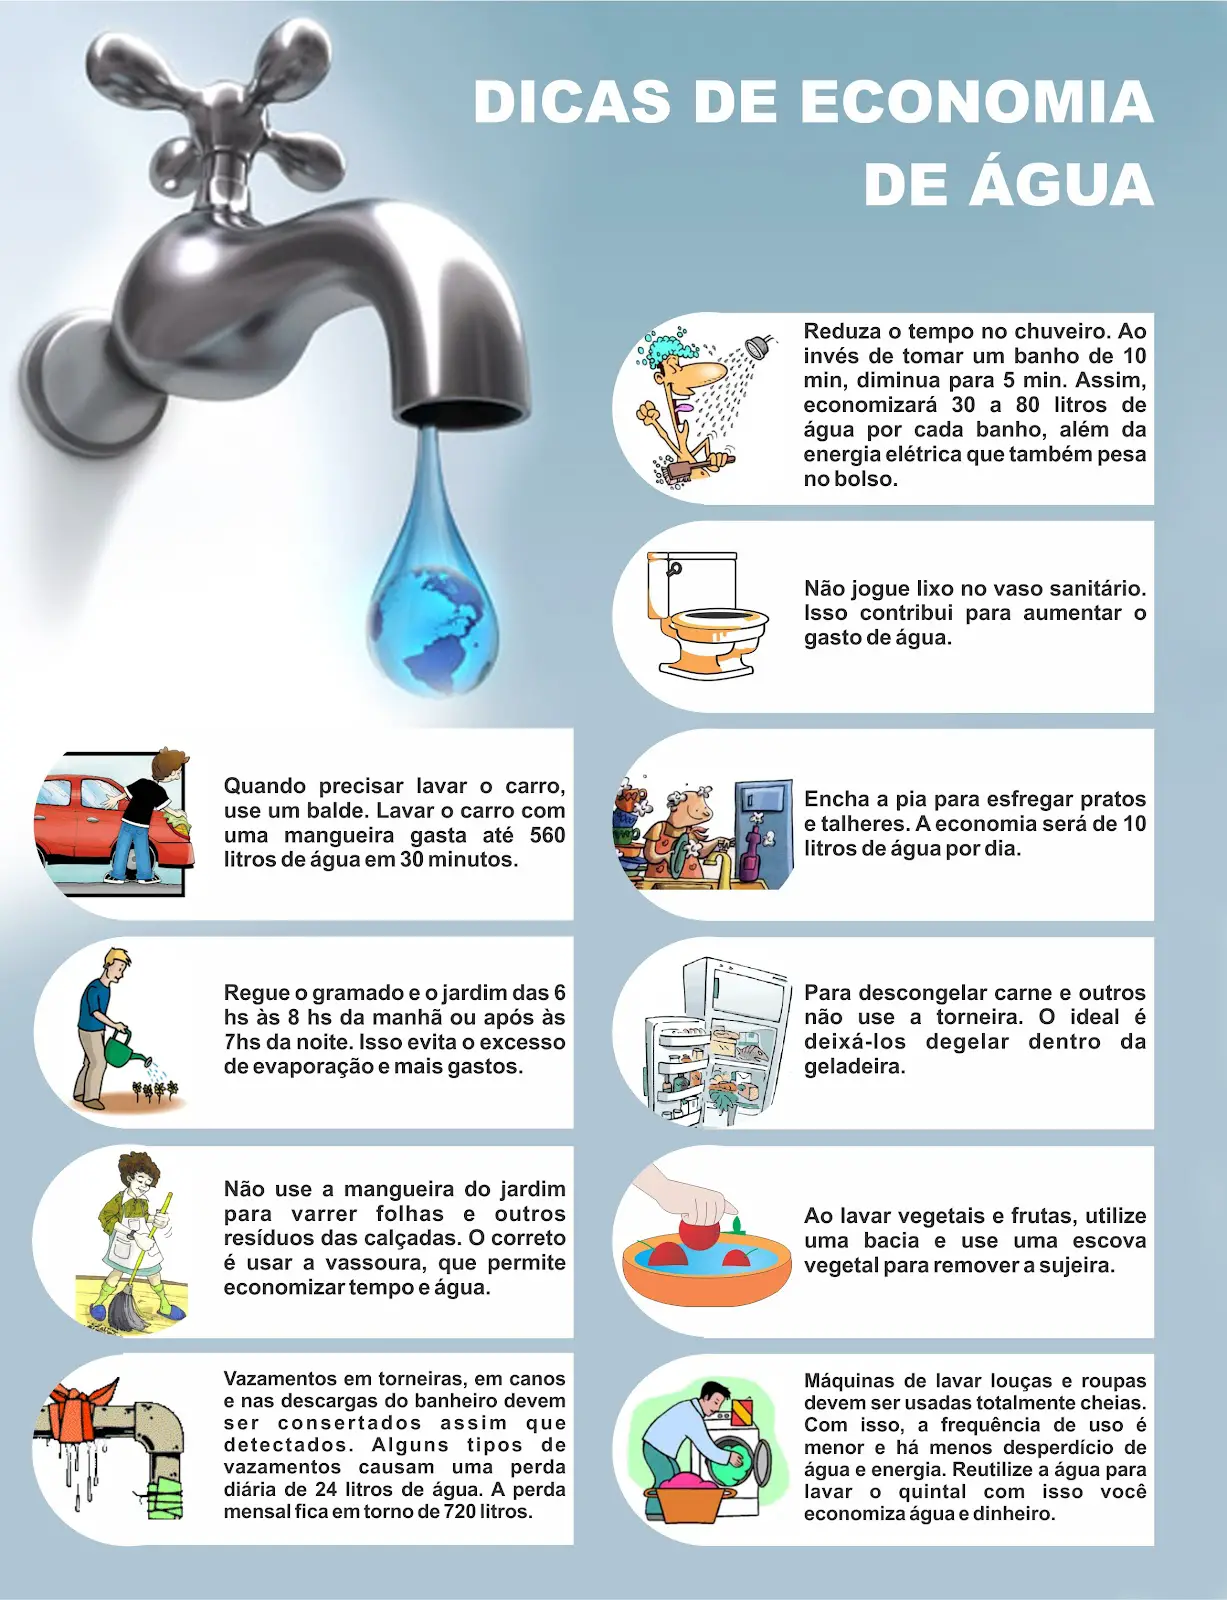 economizar-agua (5)